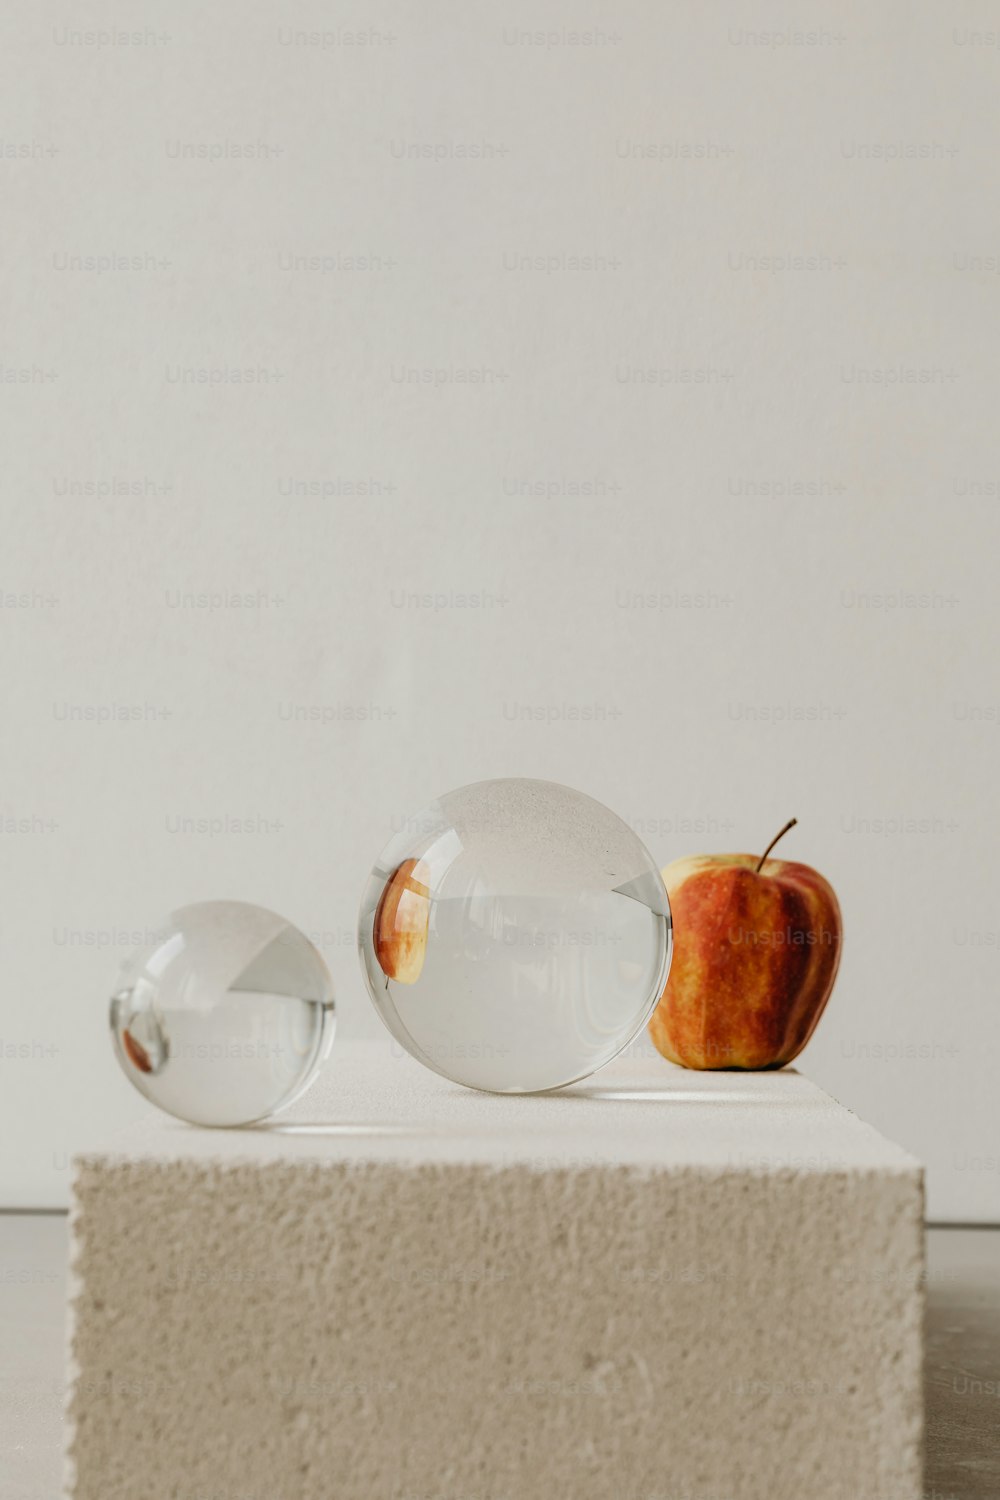 uma maçã e duas bolas de vidro em uma superfície branca